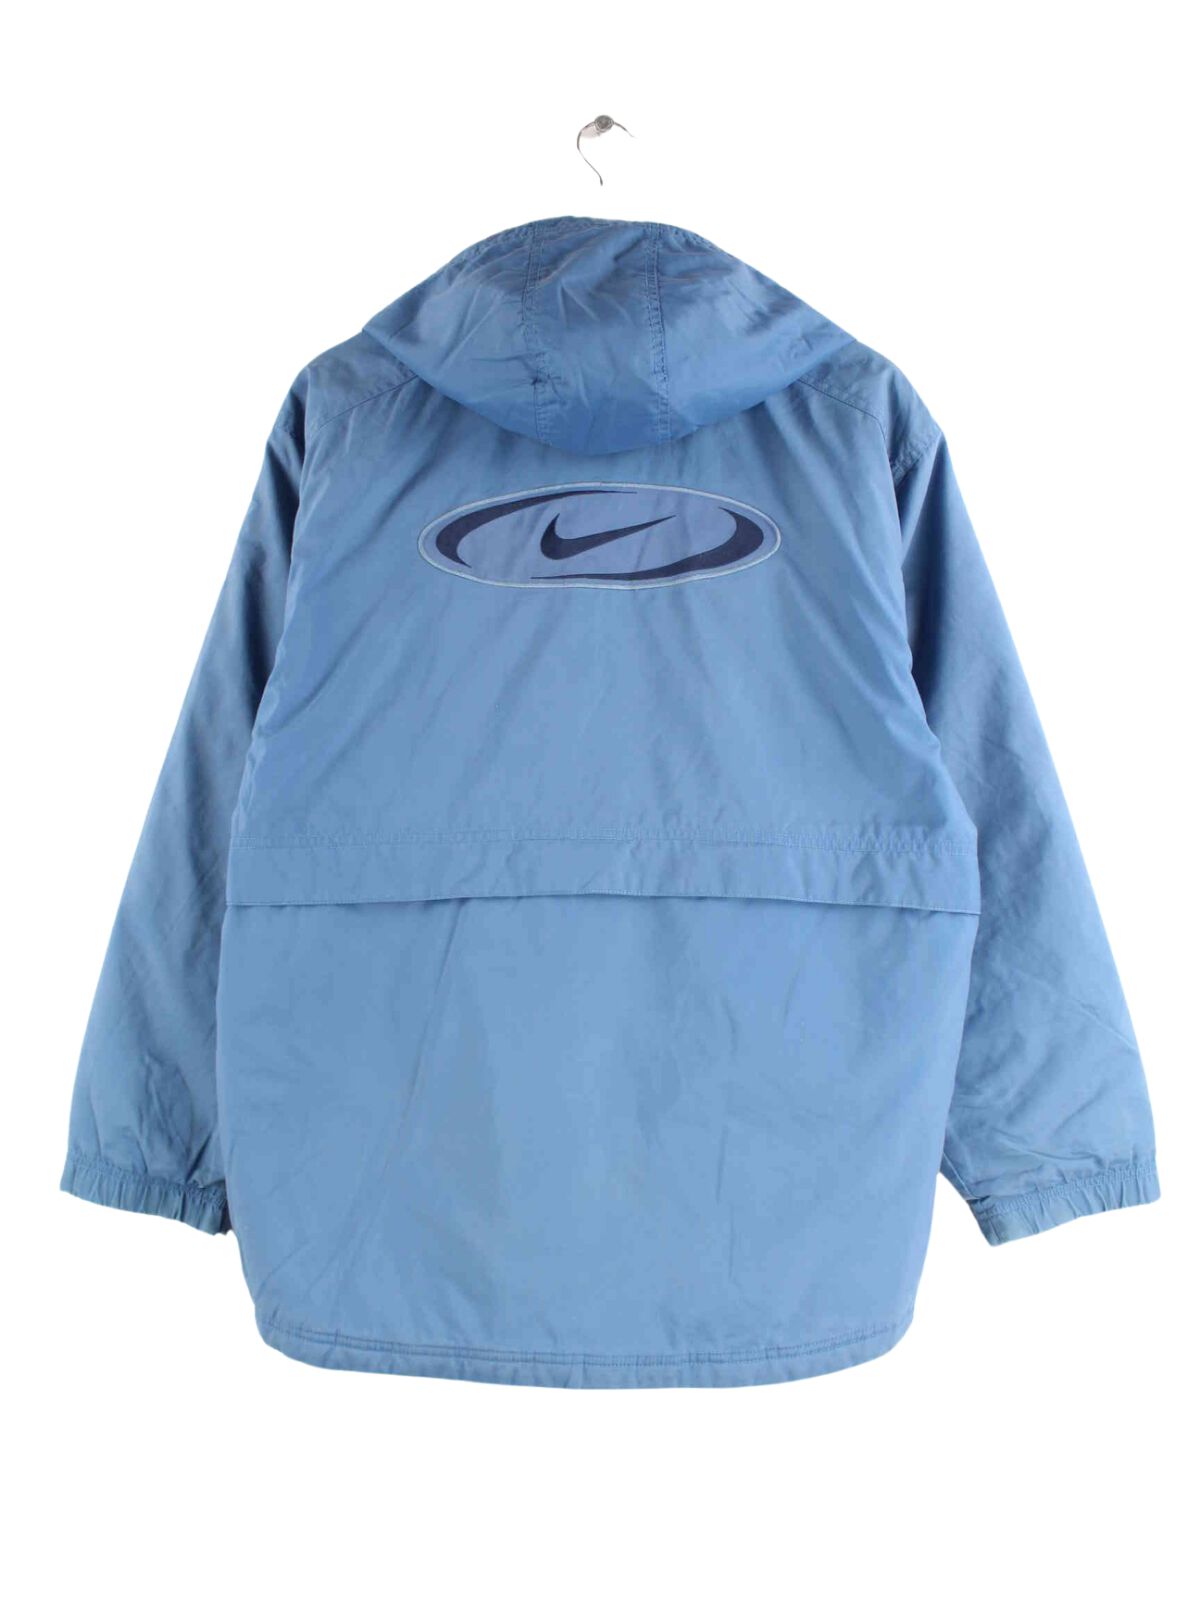 Nike 90s Vintage Center Swoosh Embroidered Jacke Blau L (back image)